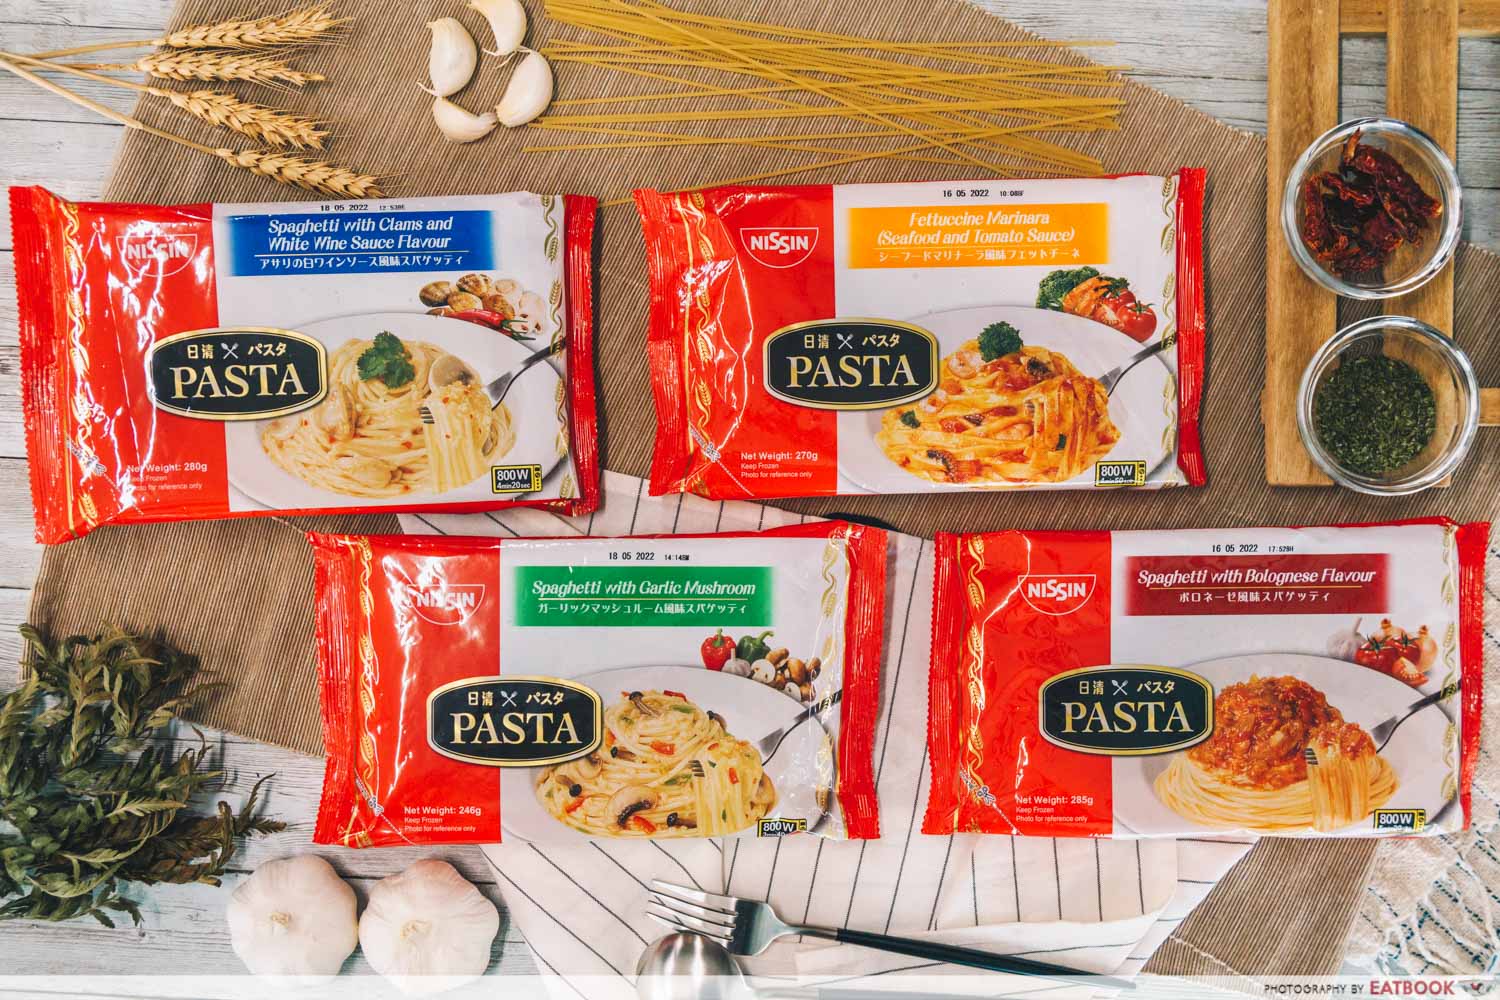 nissin frozen pasta in package